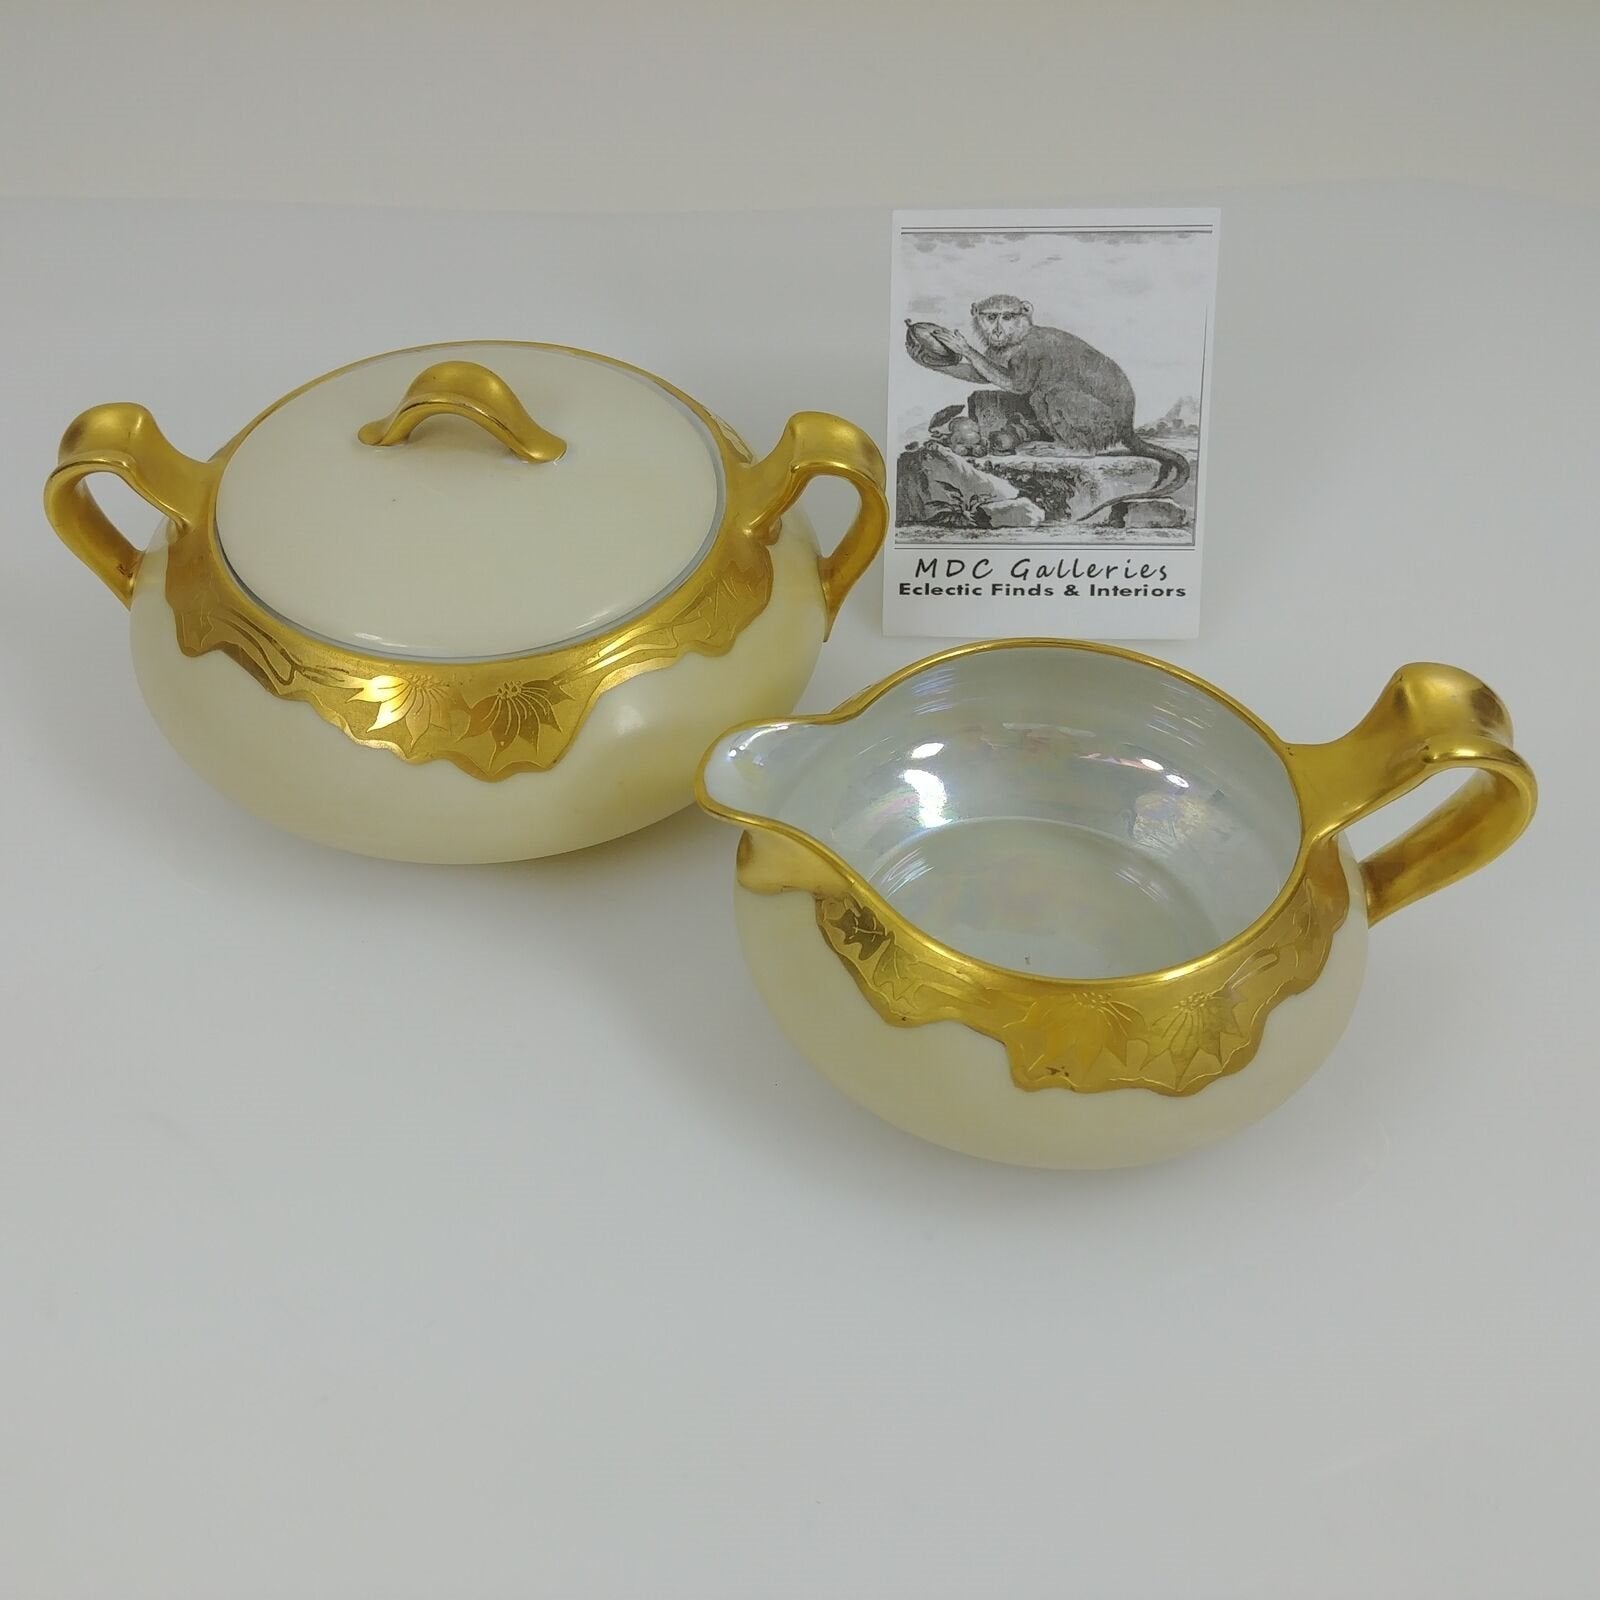 Creamer Sugar Bowl Haviland Limoges Circa 1880's 24K Acid Etched Gold Rimmed